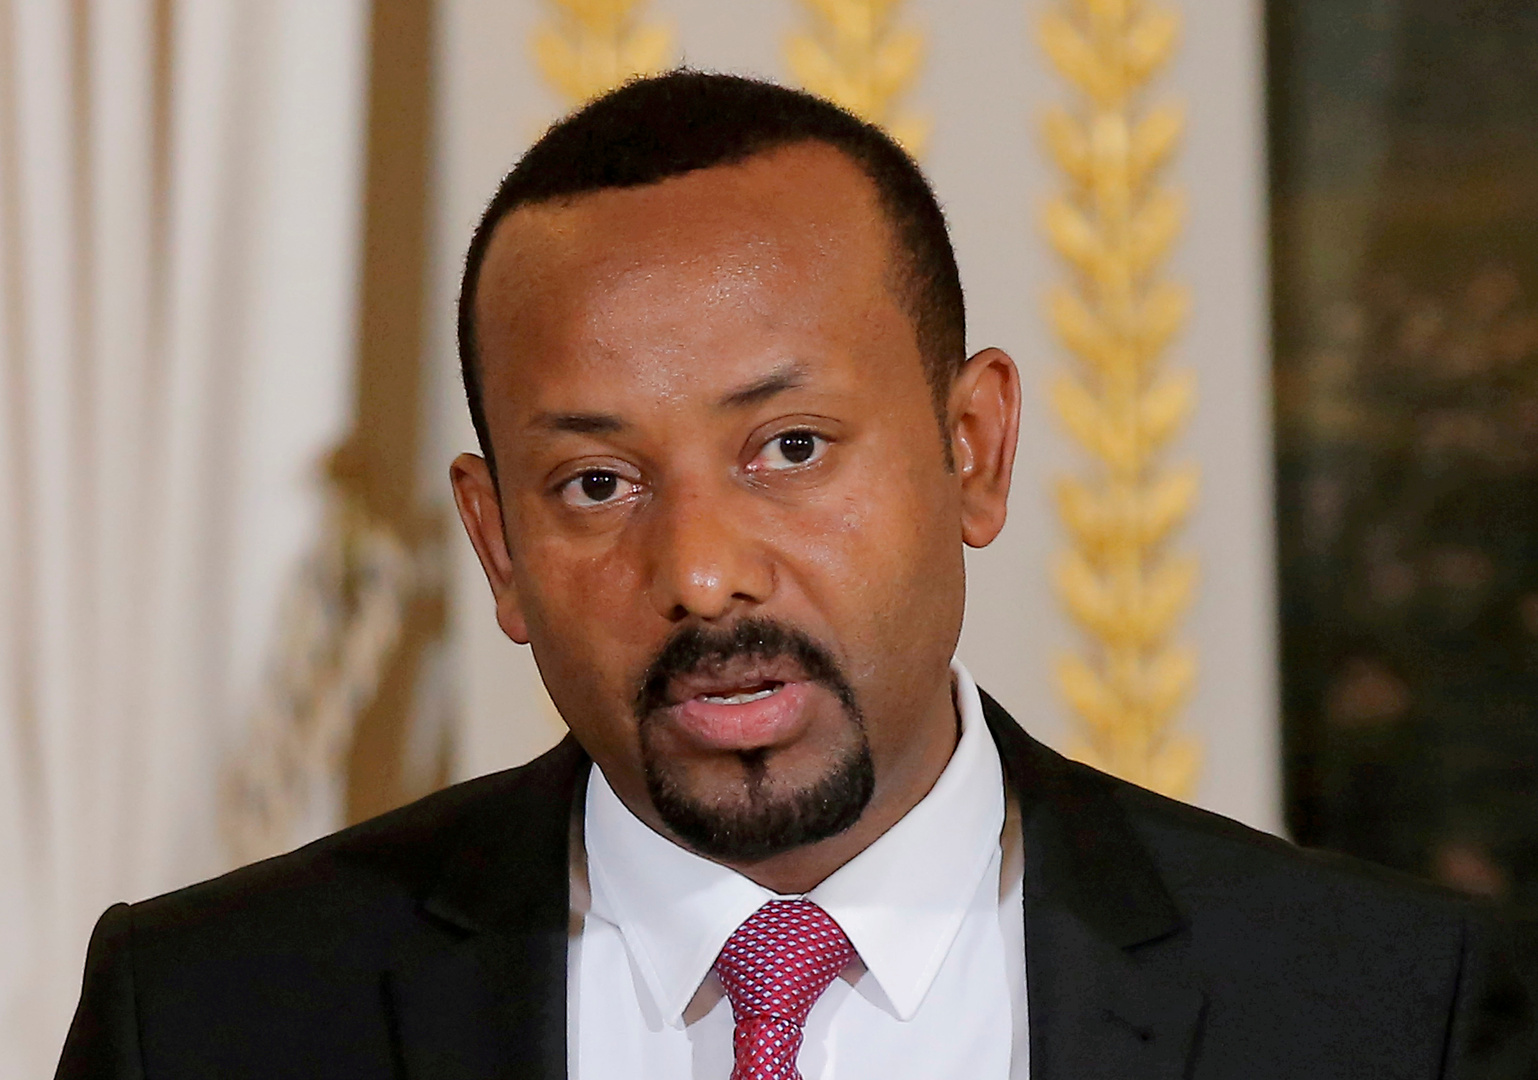 حكومة إثيوبيا تعلن أنها أطلقت النار على فريق الأمم المتحدة في تيغراي لمخالفته التعليمات